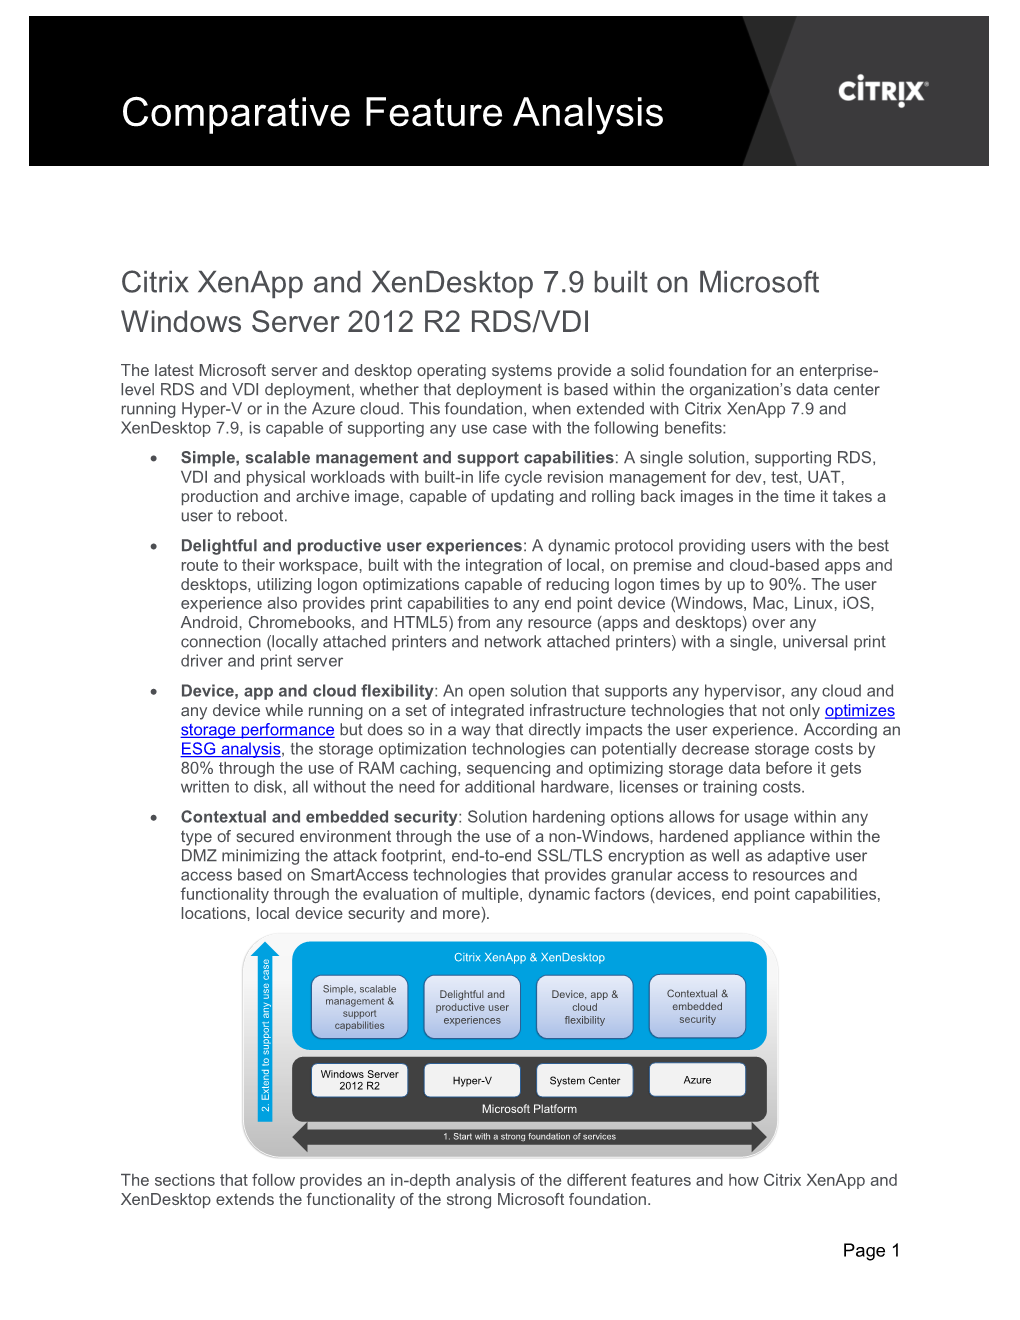 Windows Server 2012R2 RDS-VDI Feature Comparison